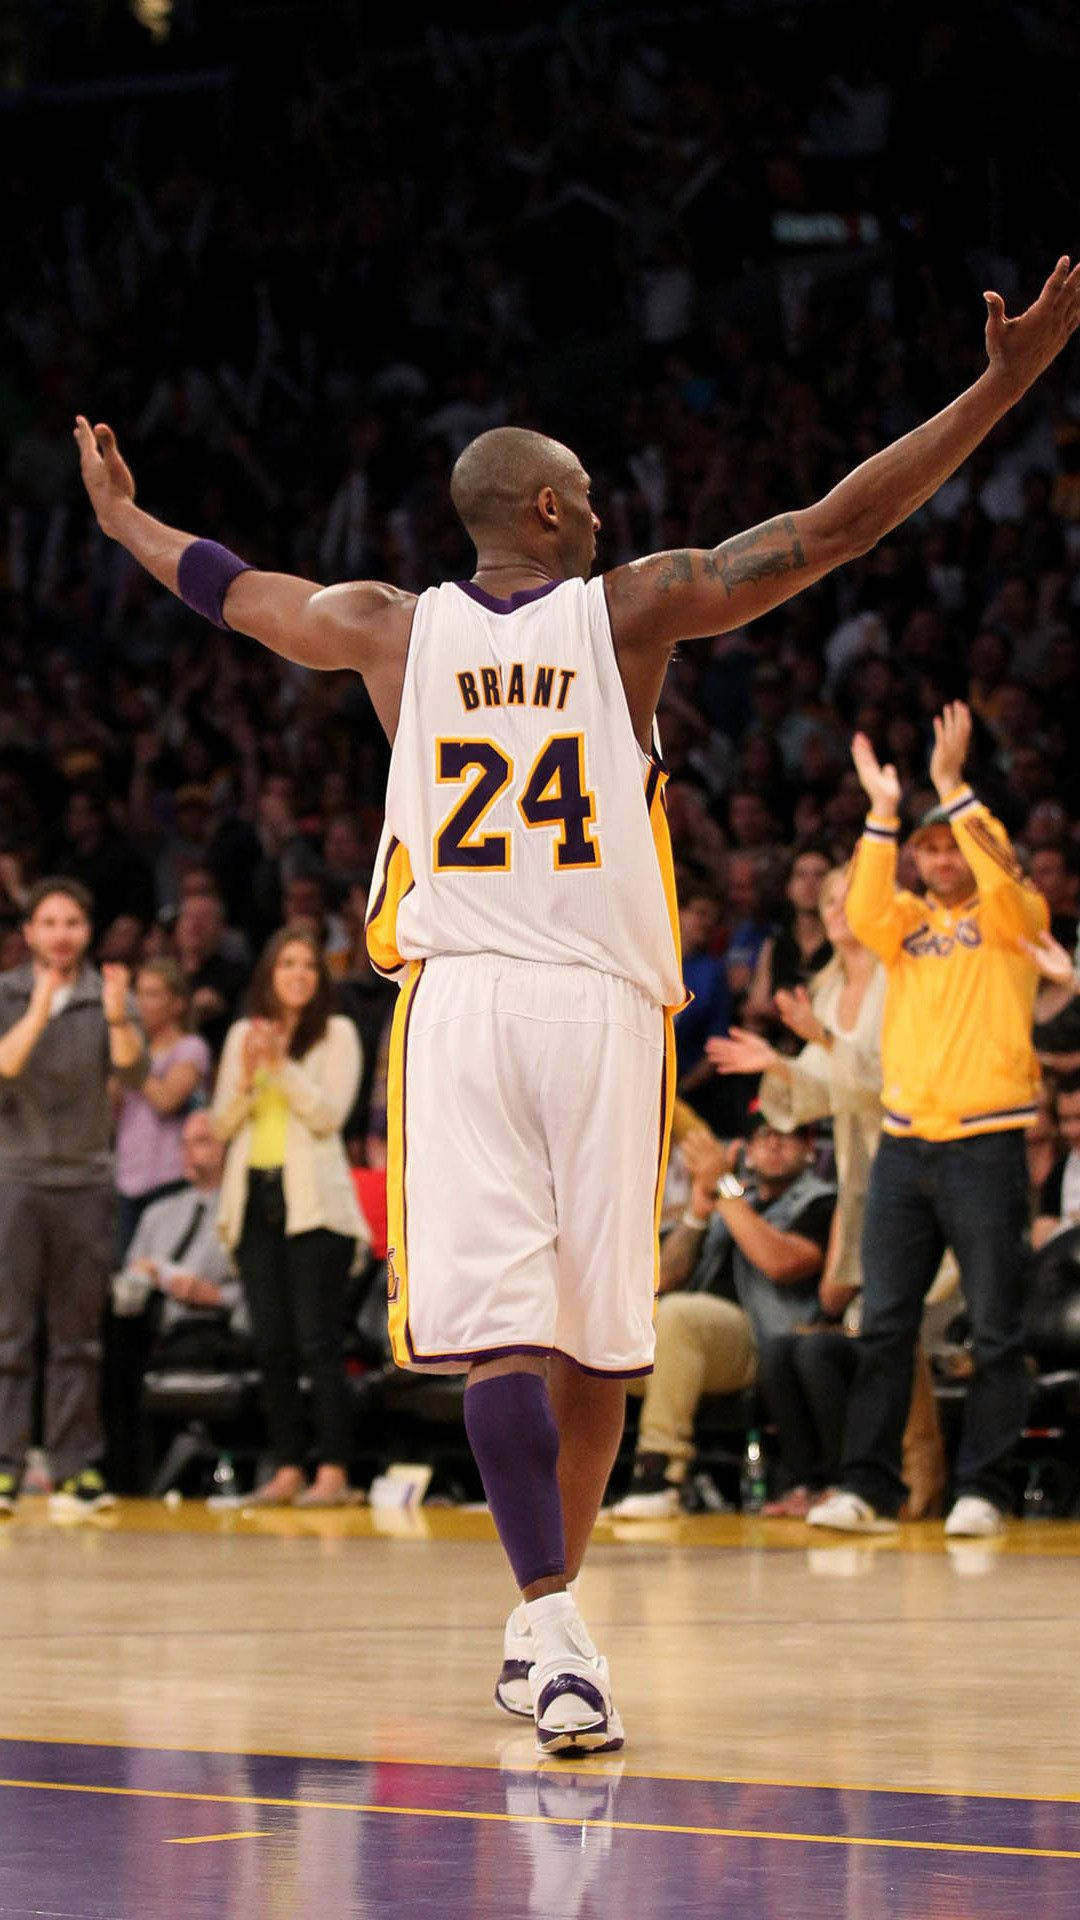 Fondode Pantalla De Iphone Con El Uniforme Blanco De Los Lakers De Kobe Bryant. Fondo de pantalla